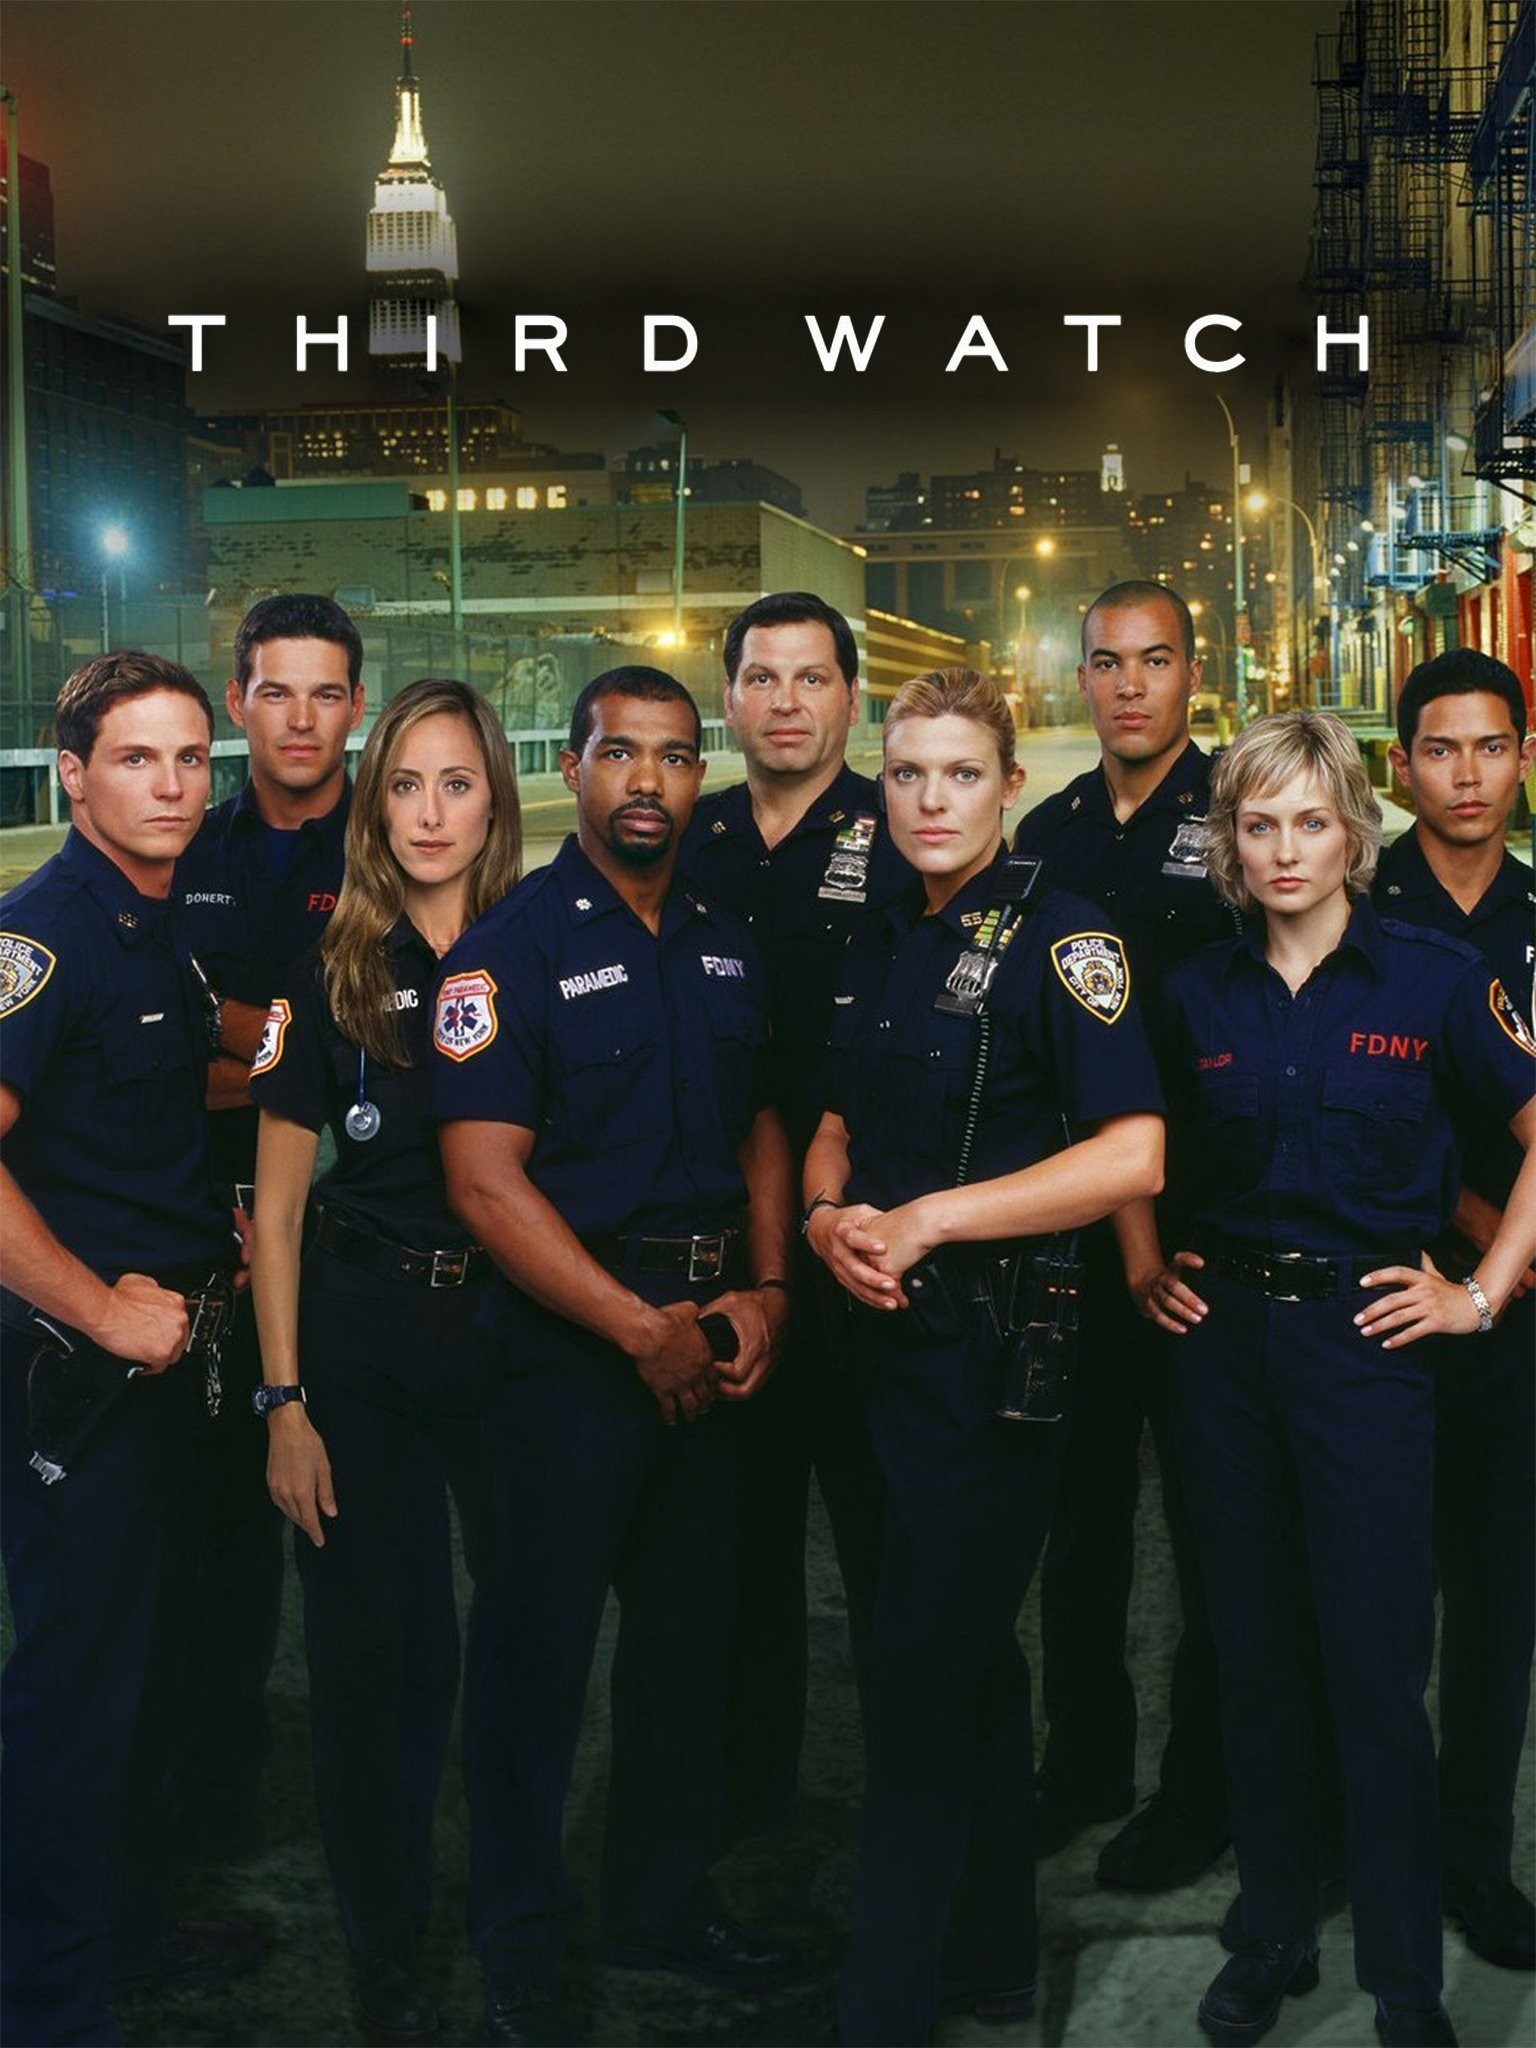 TKTV - Third Watch